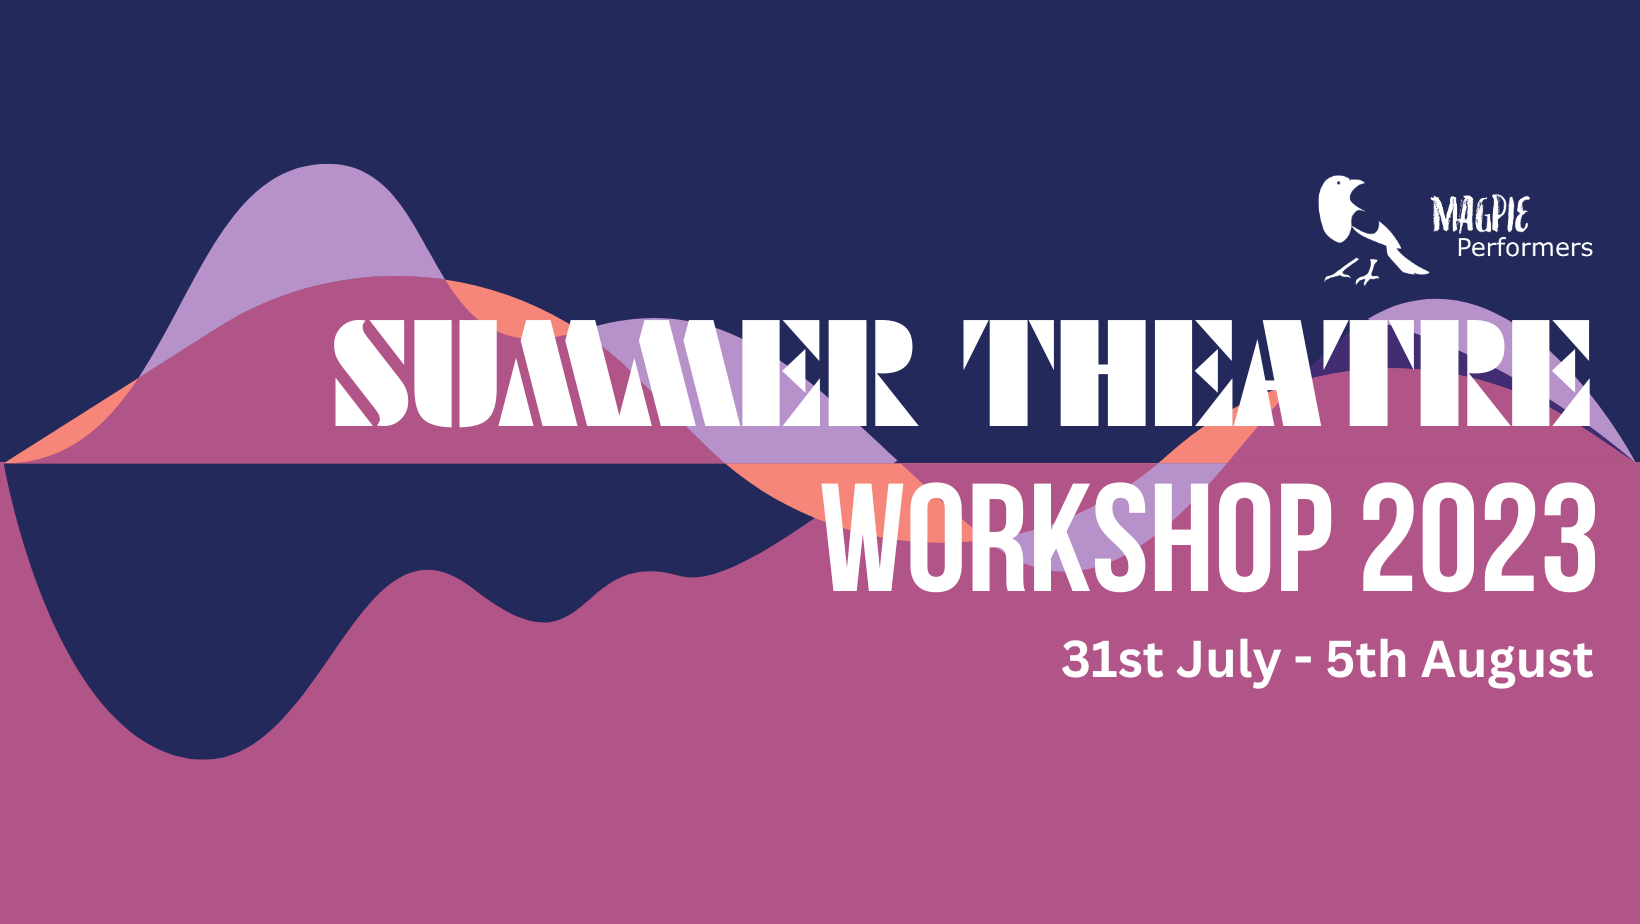 Summer theatre workshop 2023